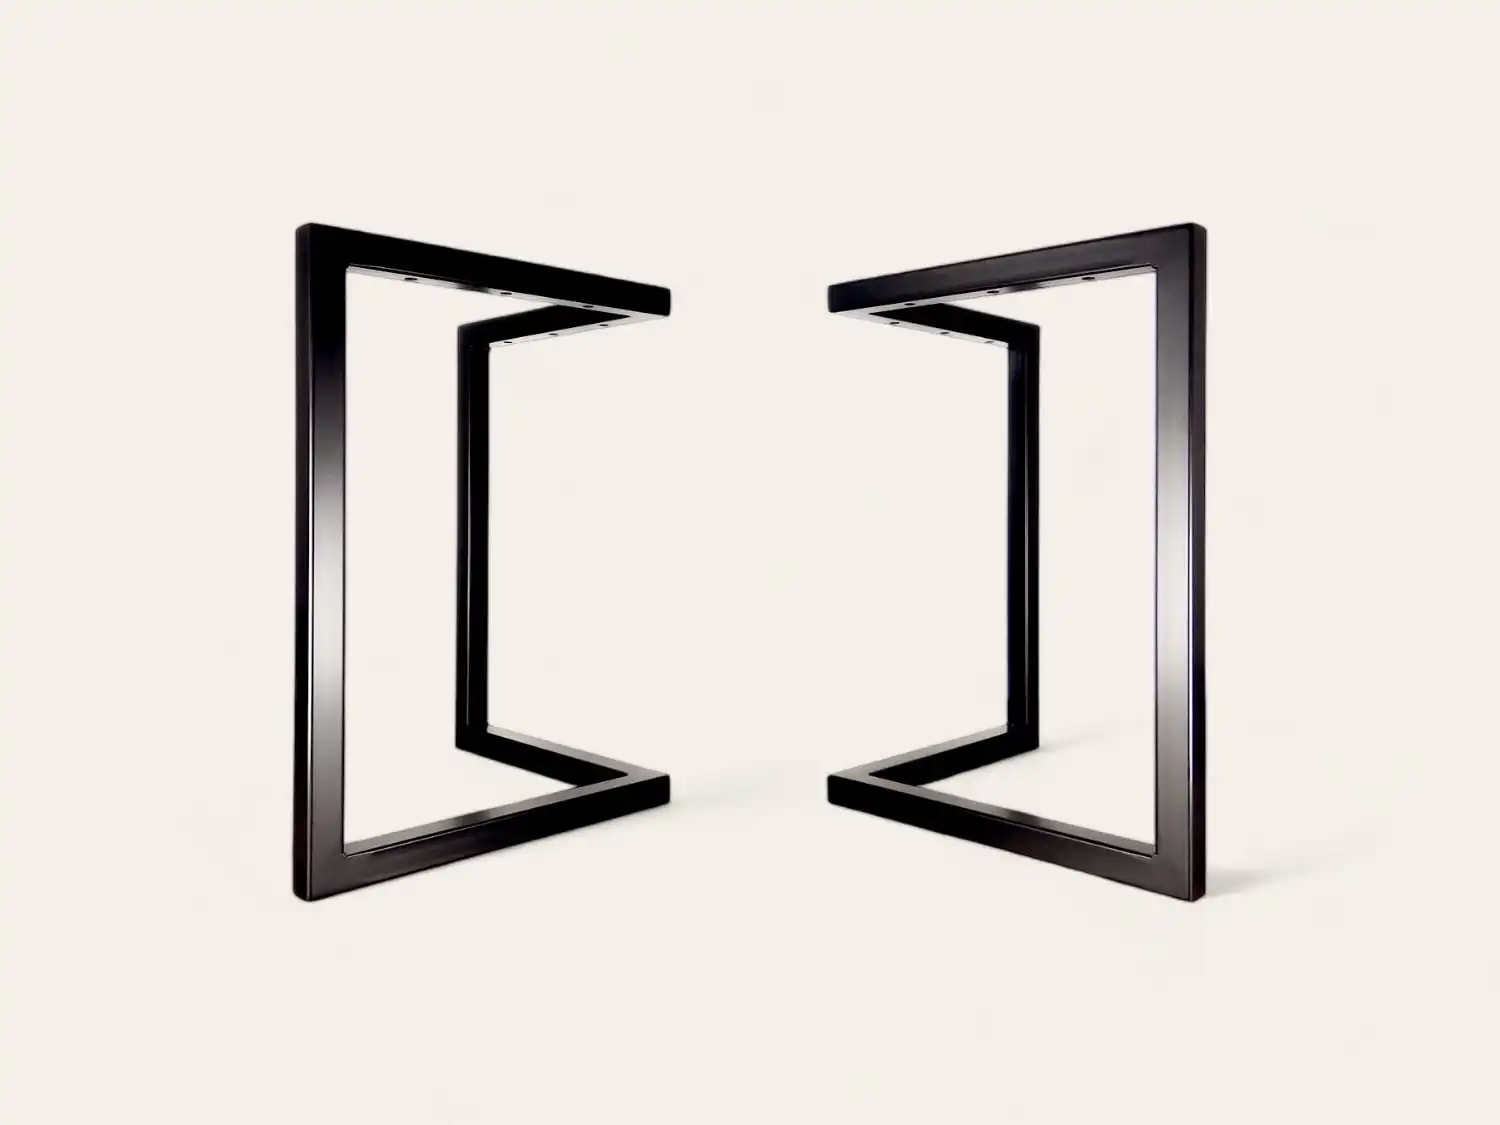 Deux structures symétriques à cadre noir positionnées pour former une forme carrée avec un vide au centre sur un fond blanc.